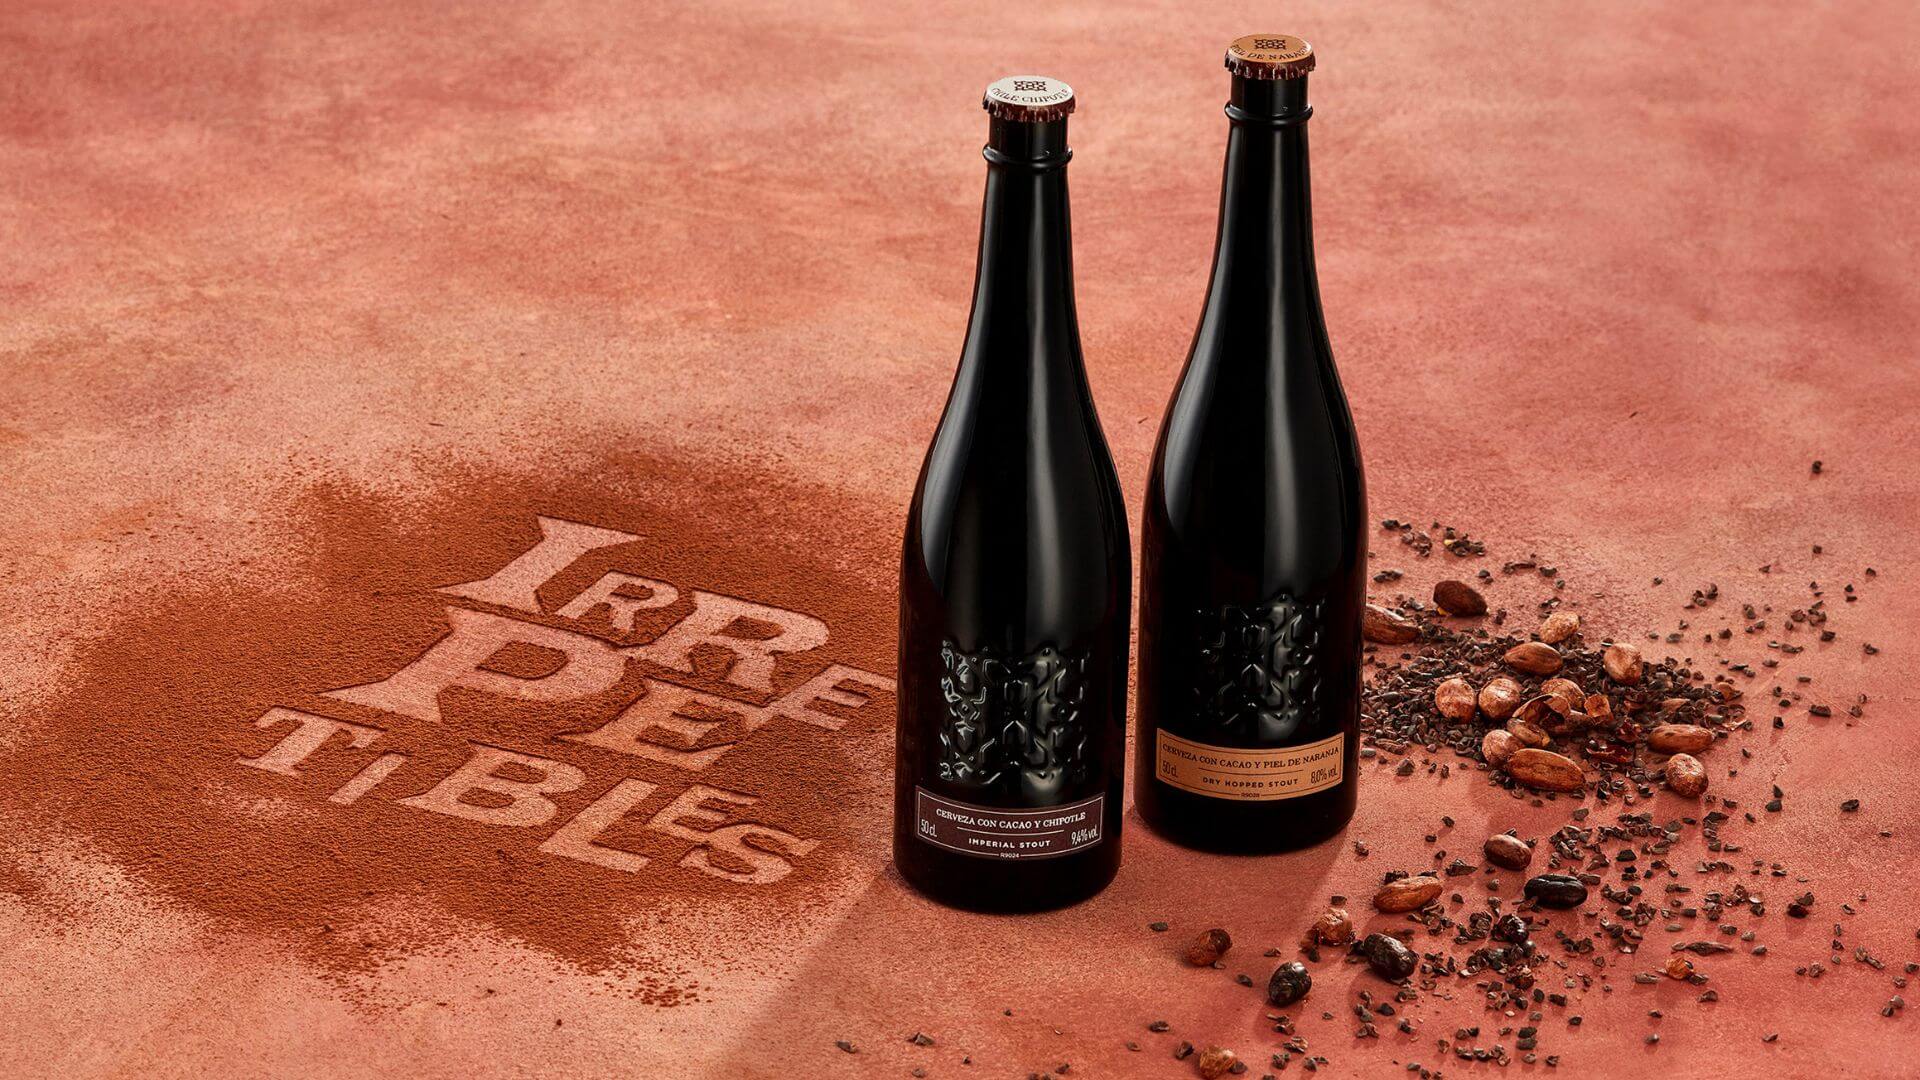 Las Numeradas de Cervezas Alhambra - Cacao o cuando la inspiración brota de lo inesperado